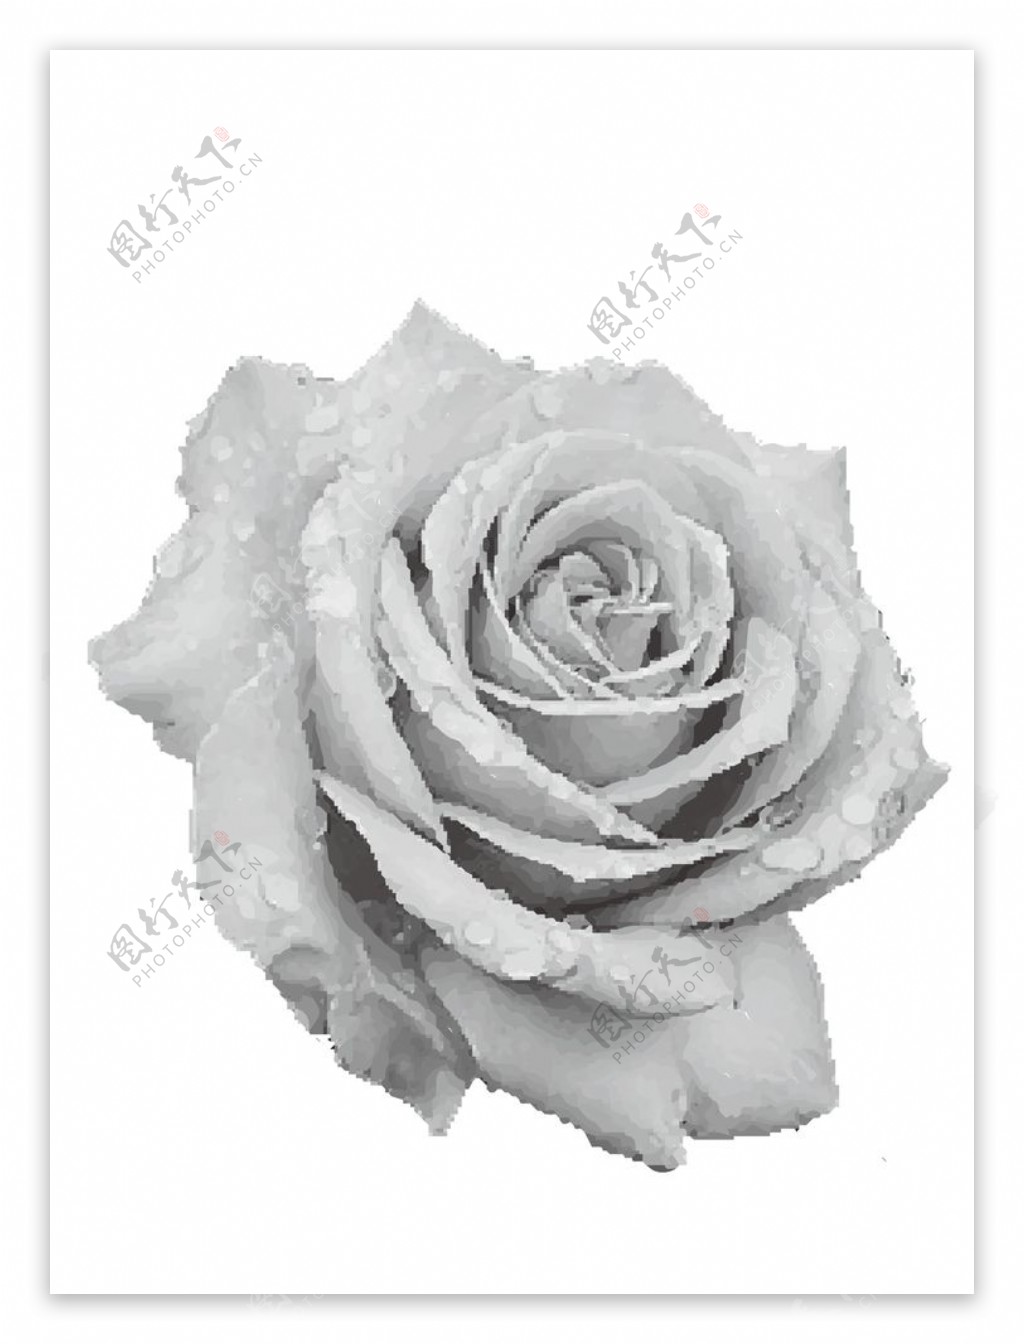 矢量色块组灰度玫瑰花可自行上色